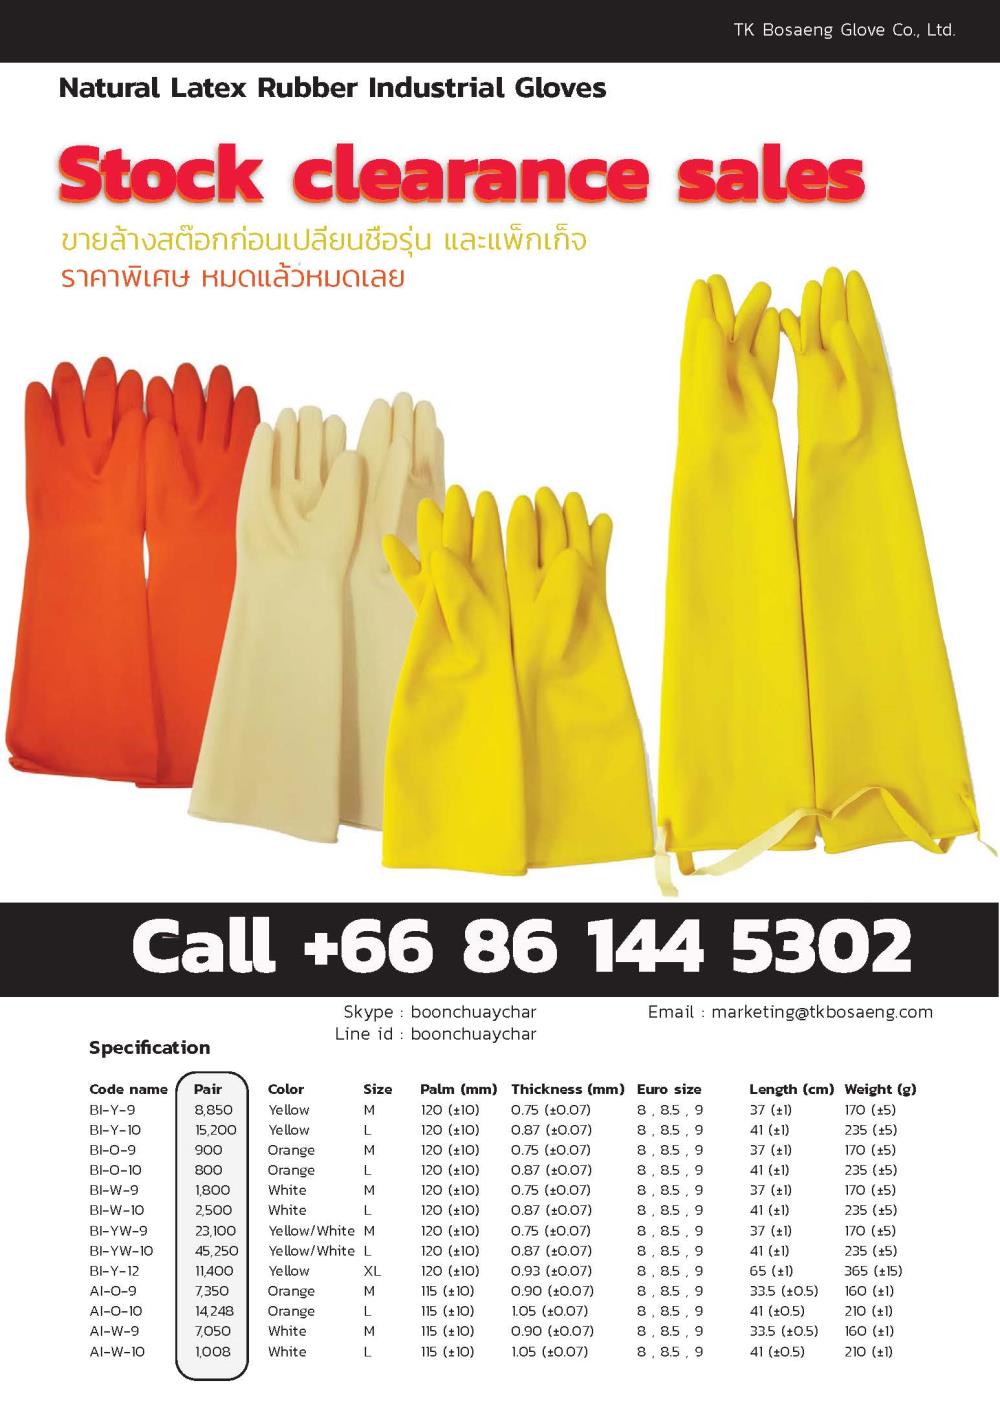 ถุงมือยาง ราคาพิเศษ,ถุงมือยาง,Maxpower,Plant and Facility Equipment/Safety Equipment/Gloves & Hand Protection